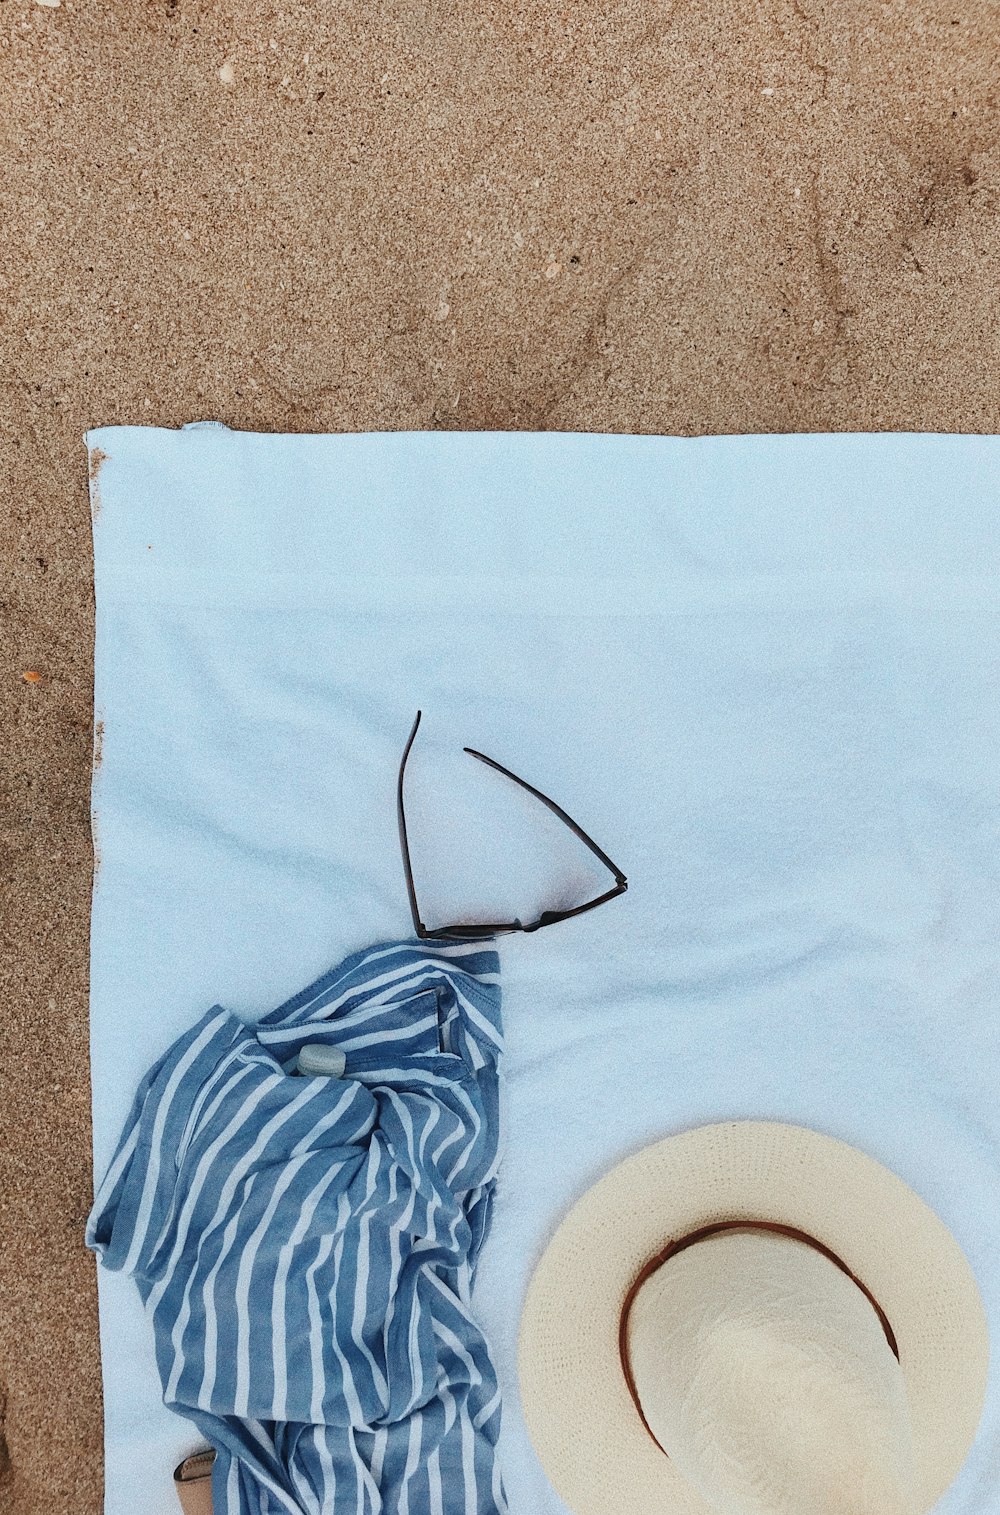 Fotografia di posa di flay di coperta, cappello estivo e occhiali da sole su asciugamano in pile